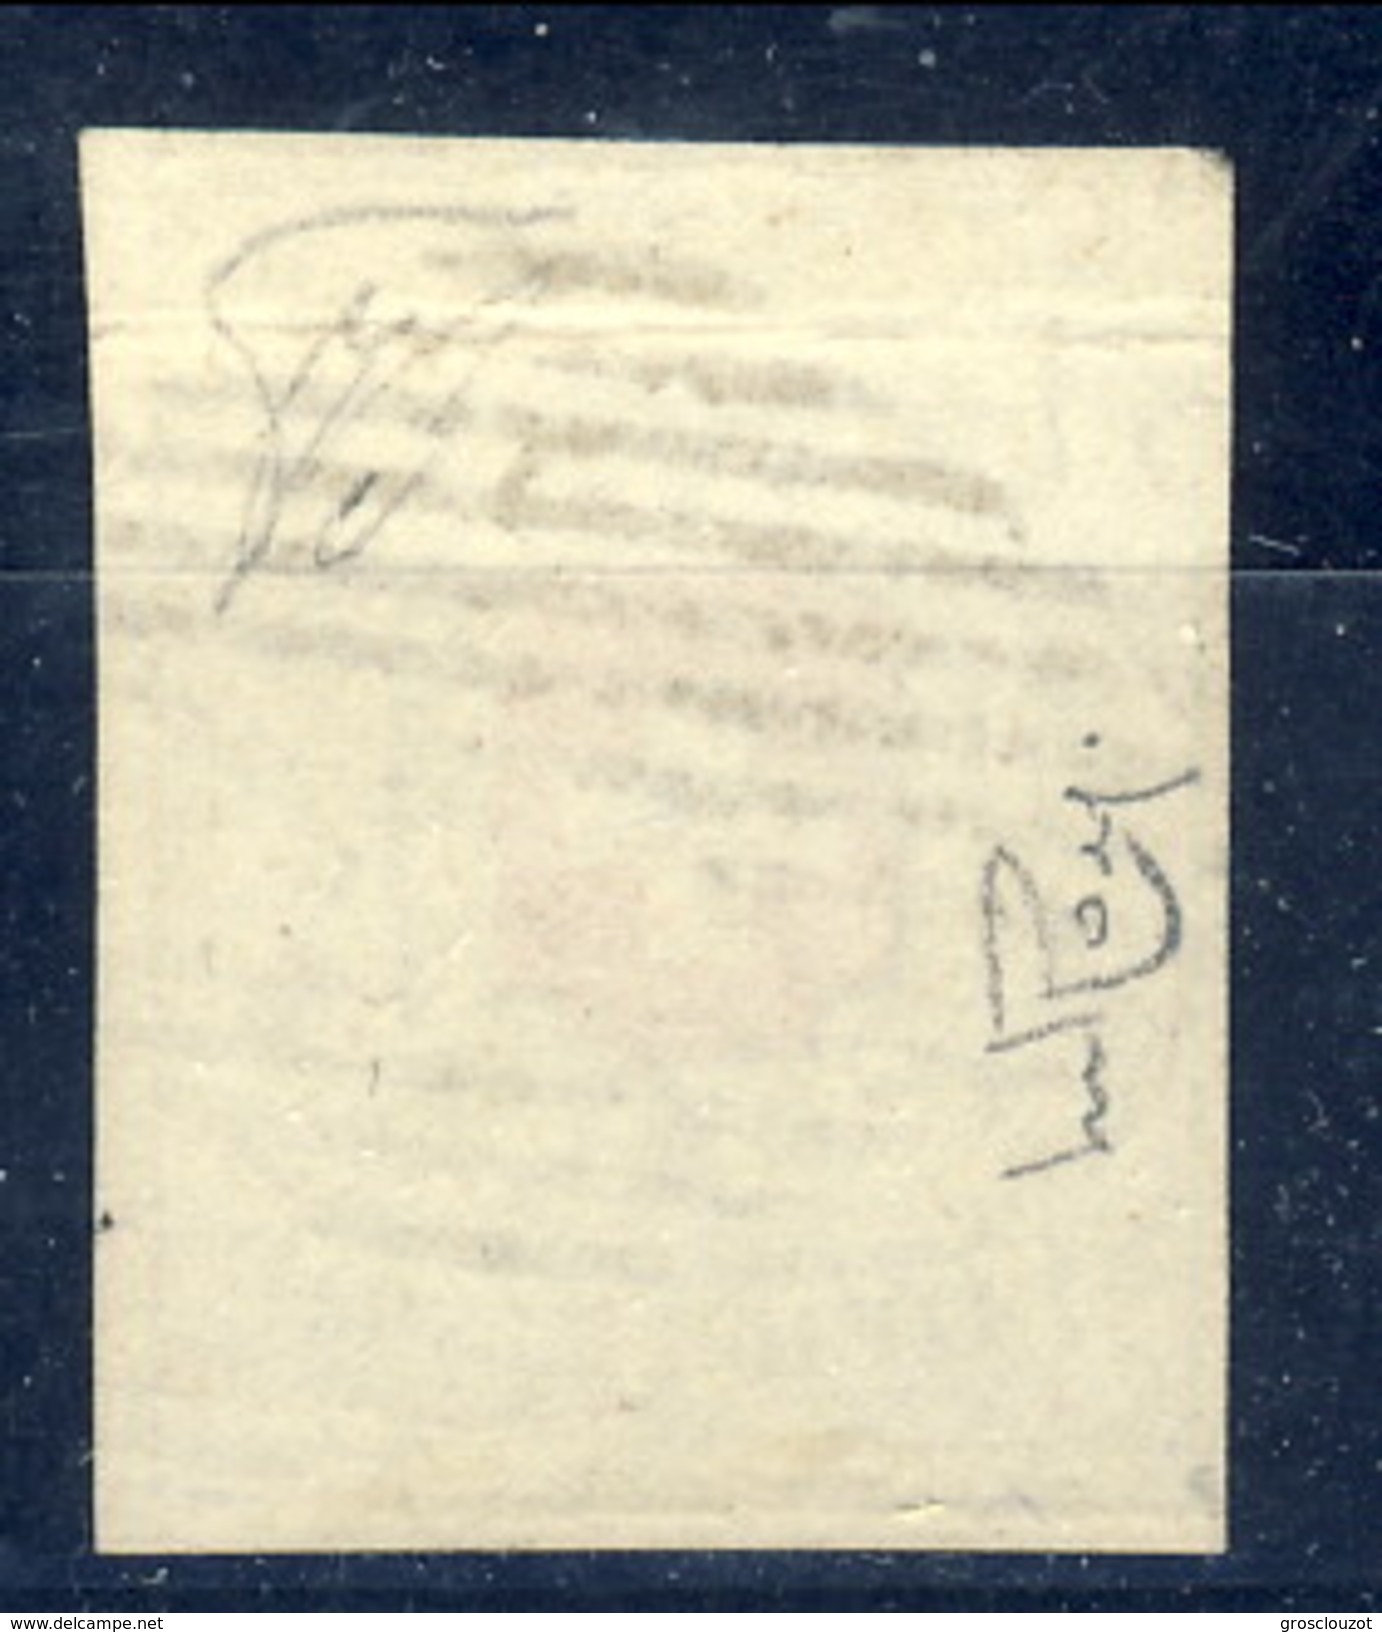 Svizzera 1851 Poste Cantonali Neuchatel N. 7 C. 5 Nero E Rosso Usato LUX Cat &euro; 5000 (E. Diena, Raybaudi) ATTEST-PER - 1843-1852 Kantonalmarken Und Bundesmarken